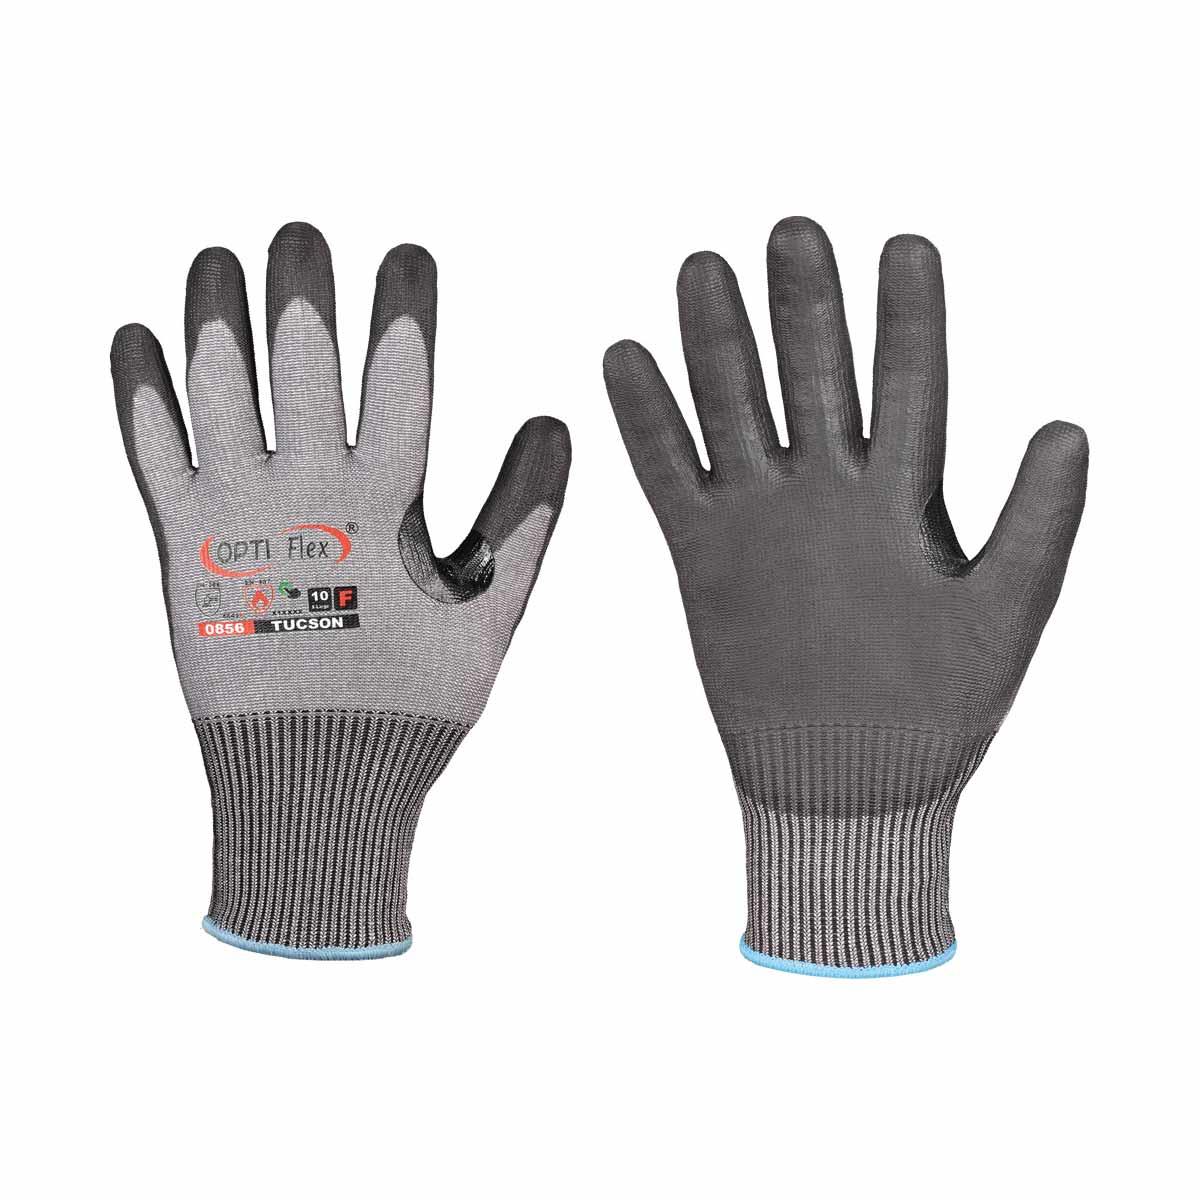 Schnittschutz Tucson OPTI Flex® Handschuh Gr. 8